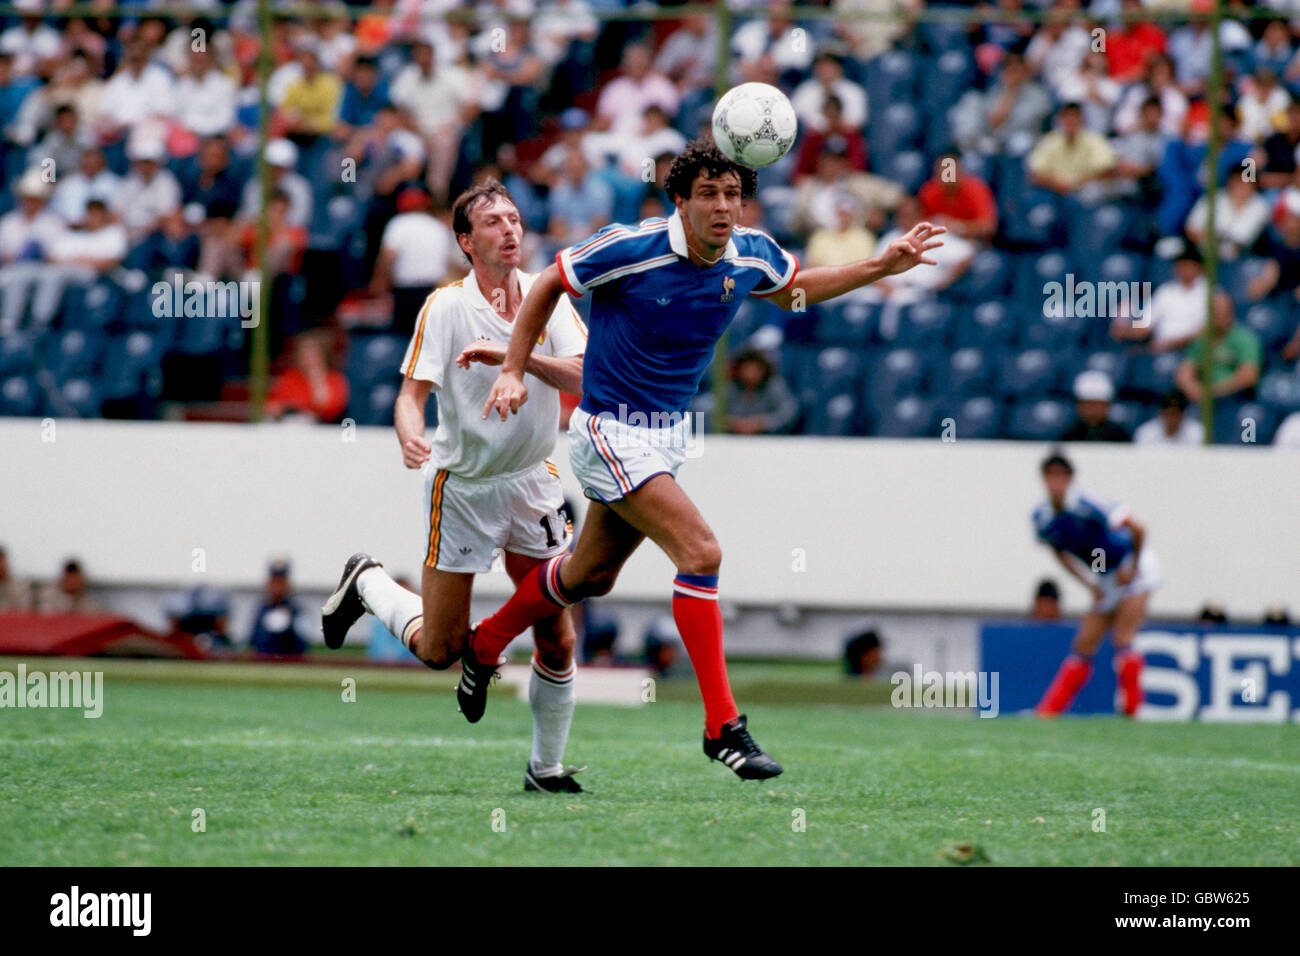 Copa Mundial de Fútbol México 86 - Tercer lugar Play off - Bélgica/Francia  Fotografía de stock - Alamy